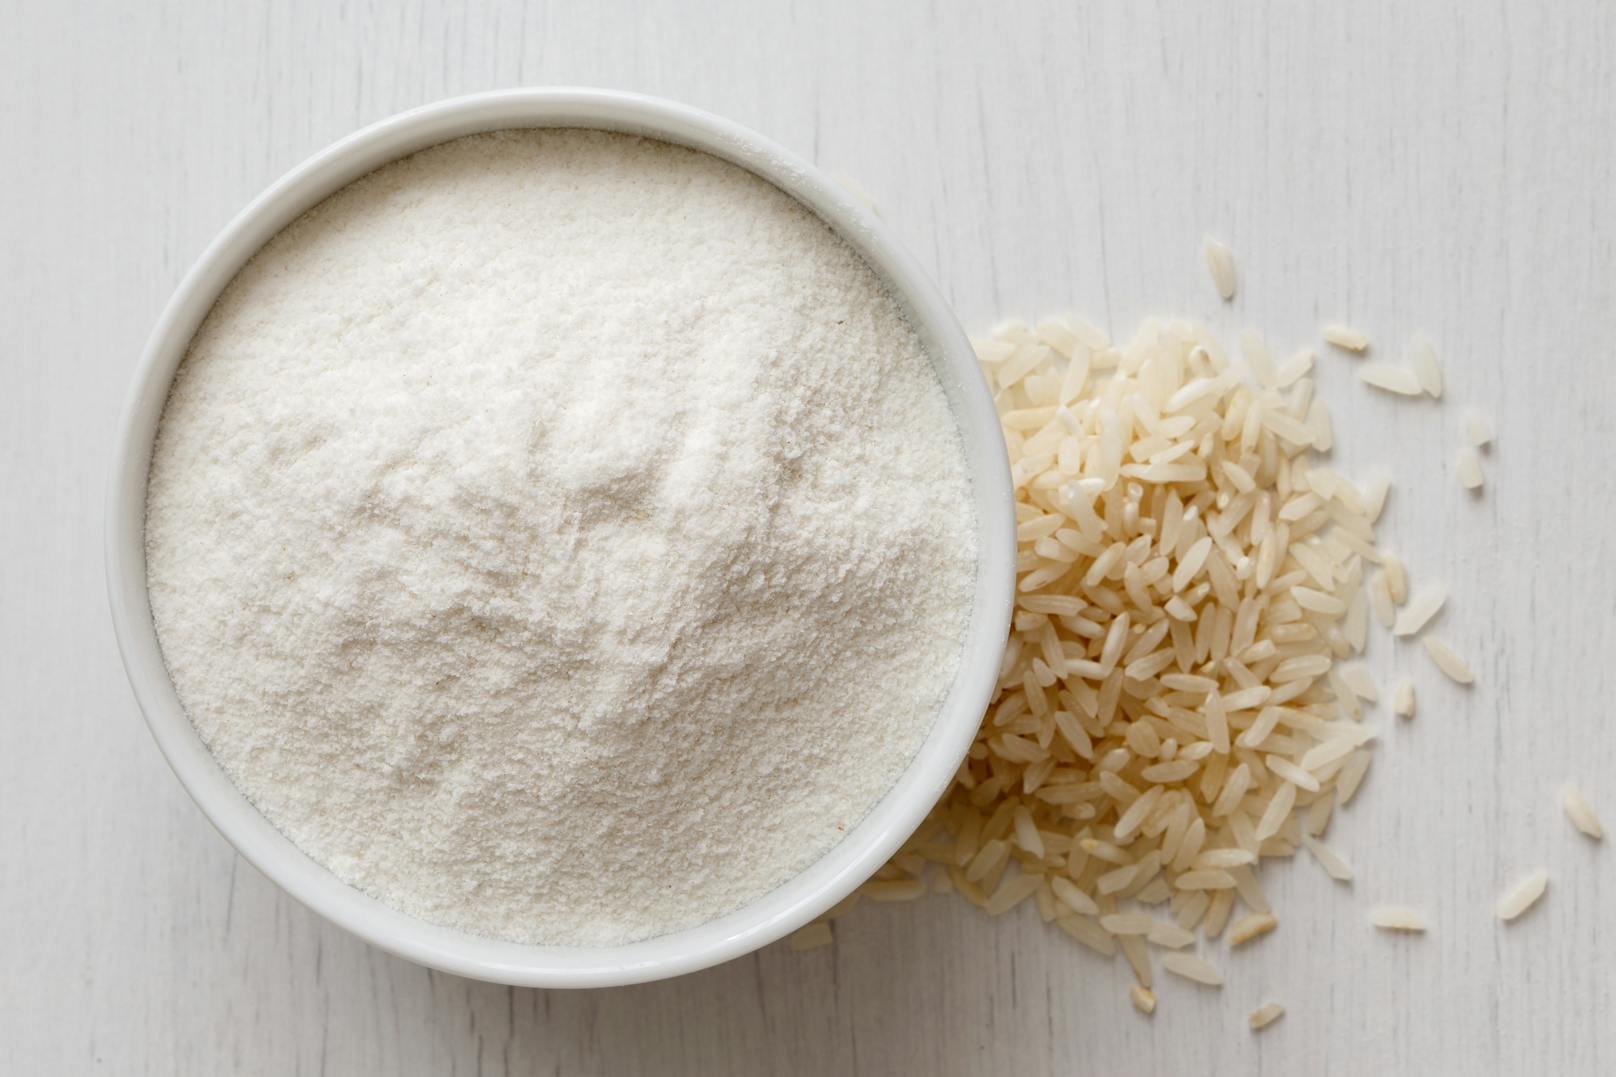 Viele glutenfreie Mehlmischungen basieren darauf, man kann es aber auch alleine verwenden, etwa für leichte Texturen wie in Gebäck. Der einzige Nachteil am sehr milden Reismehl ist, dass es nicht besonders nahrhaft ist.